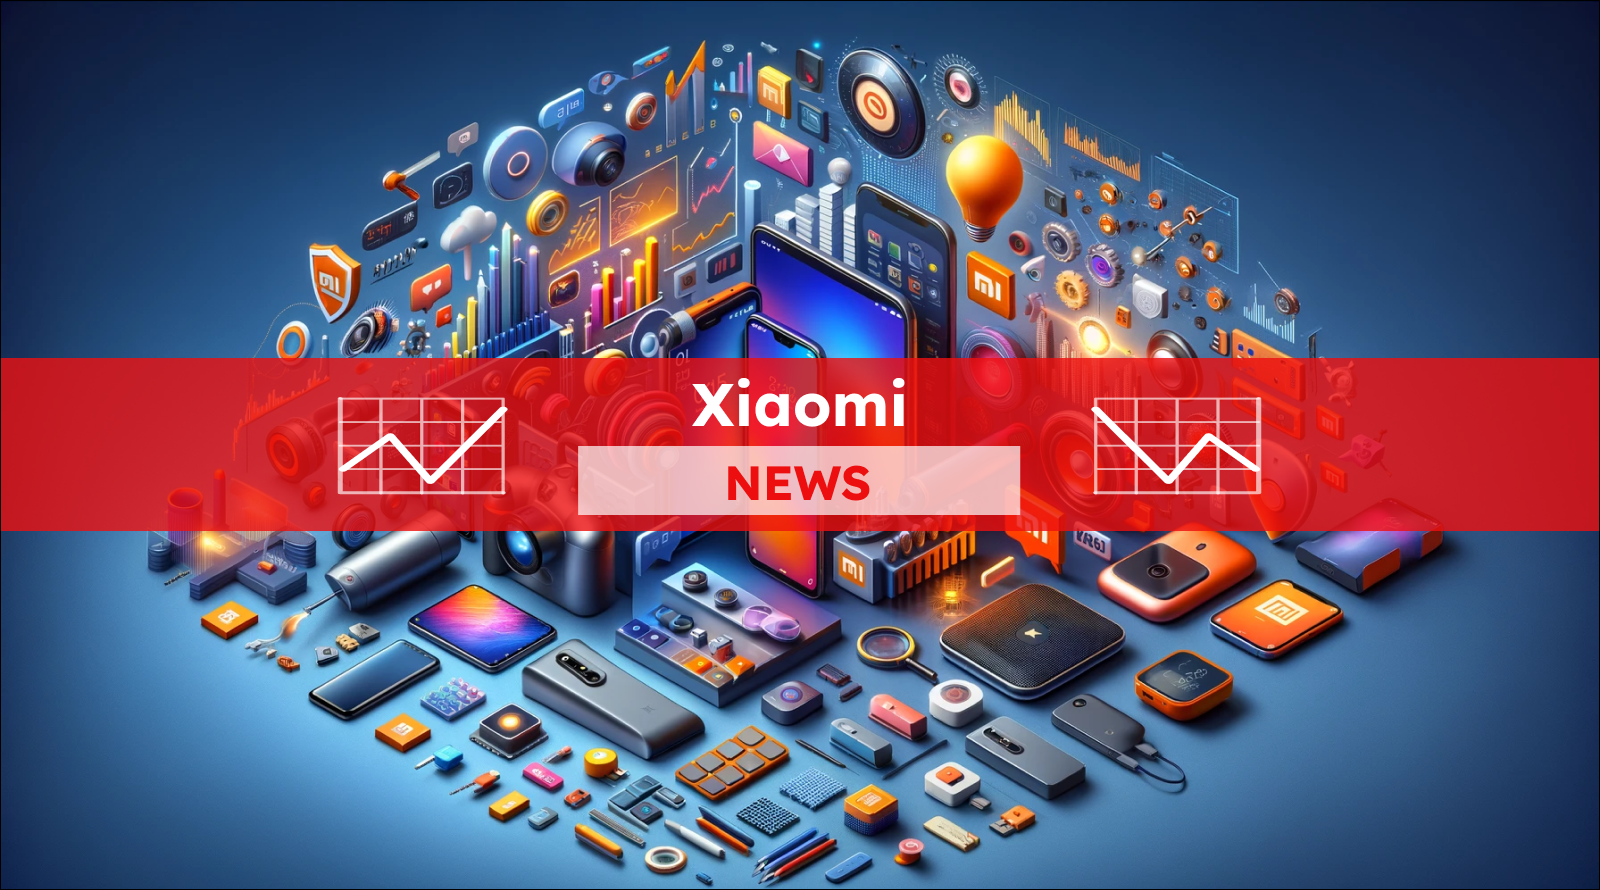 Veröffentliche ein Bild für einen Artikel über die Xiaomi-Aktie